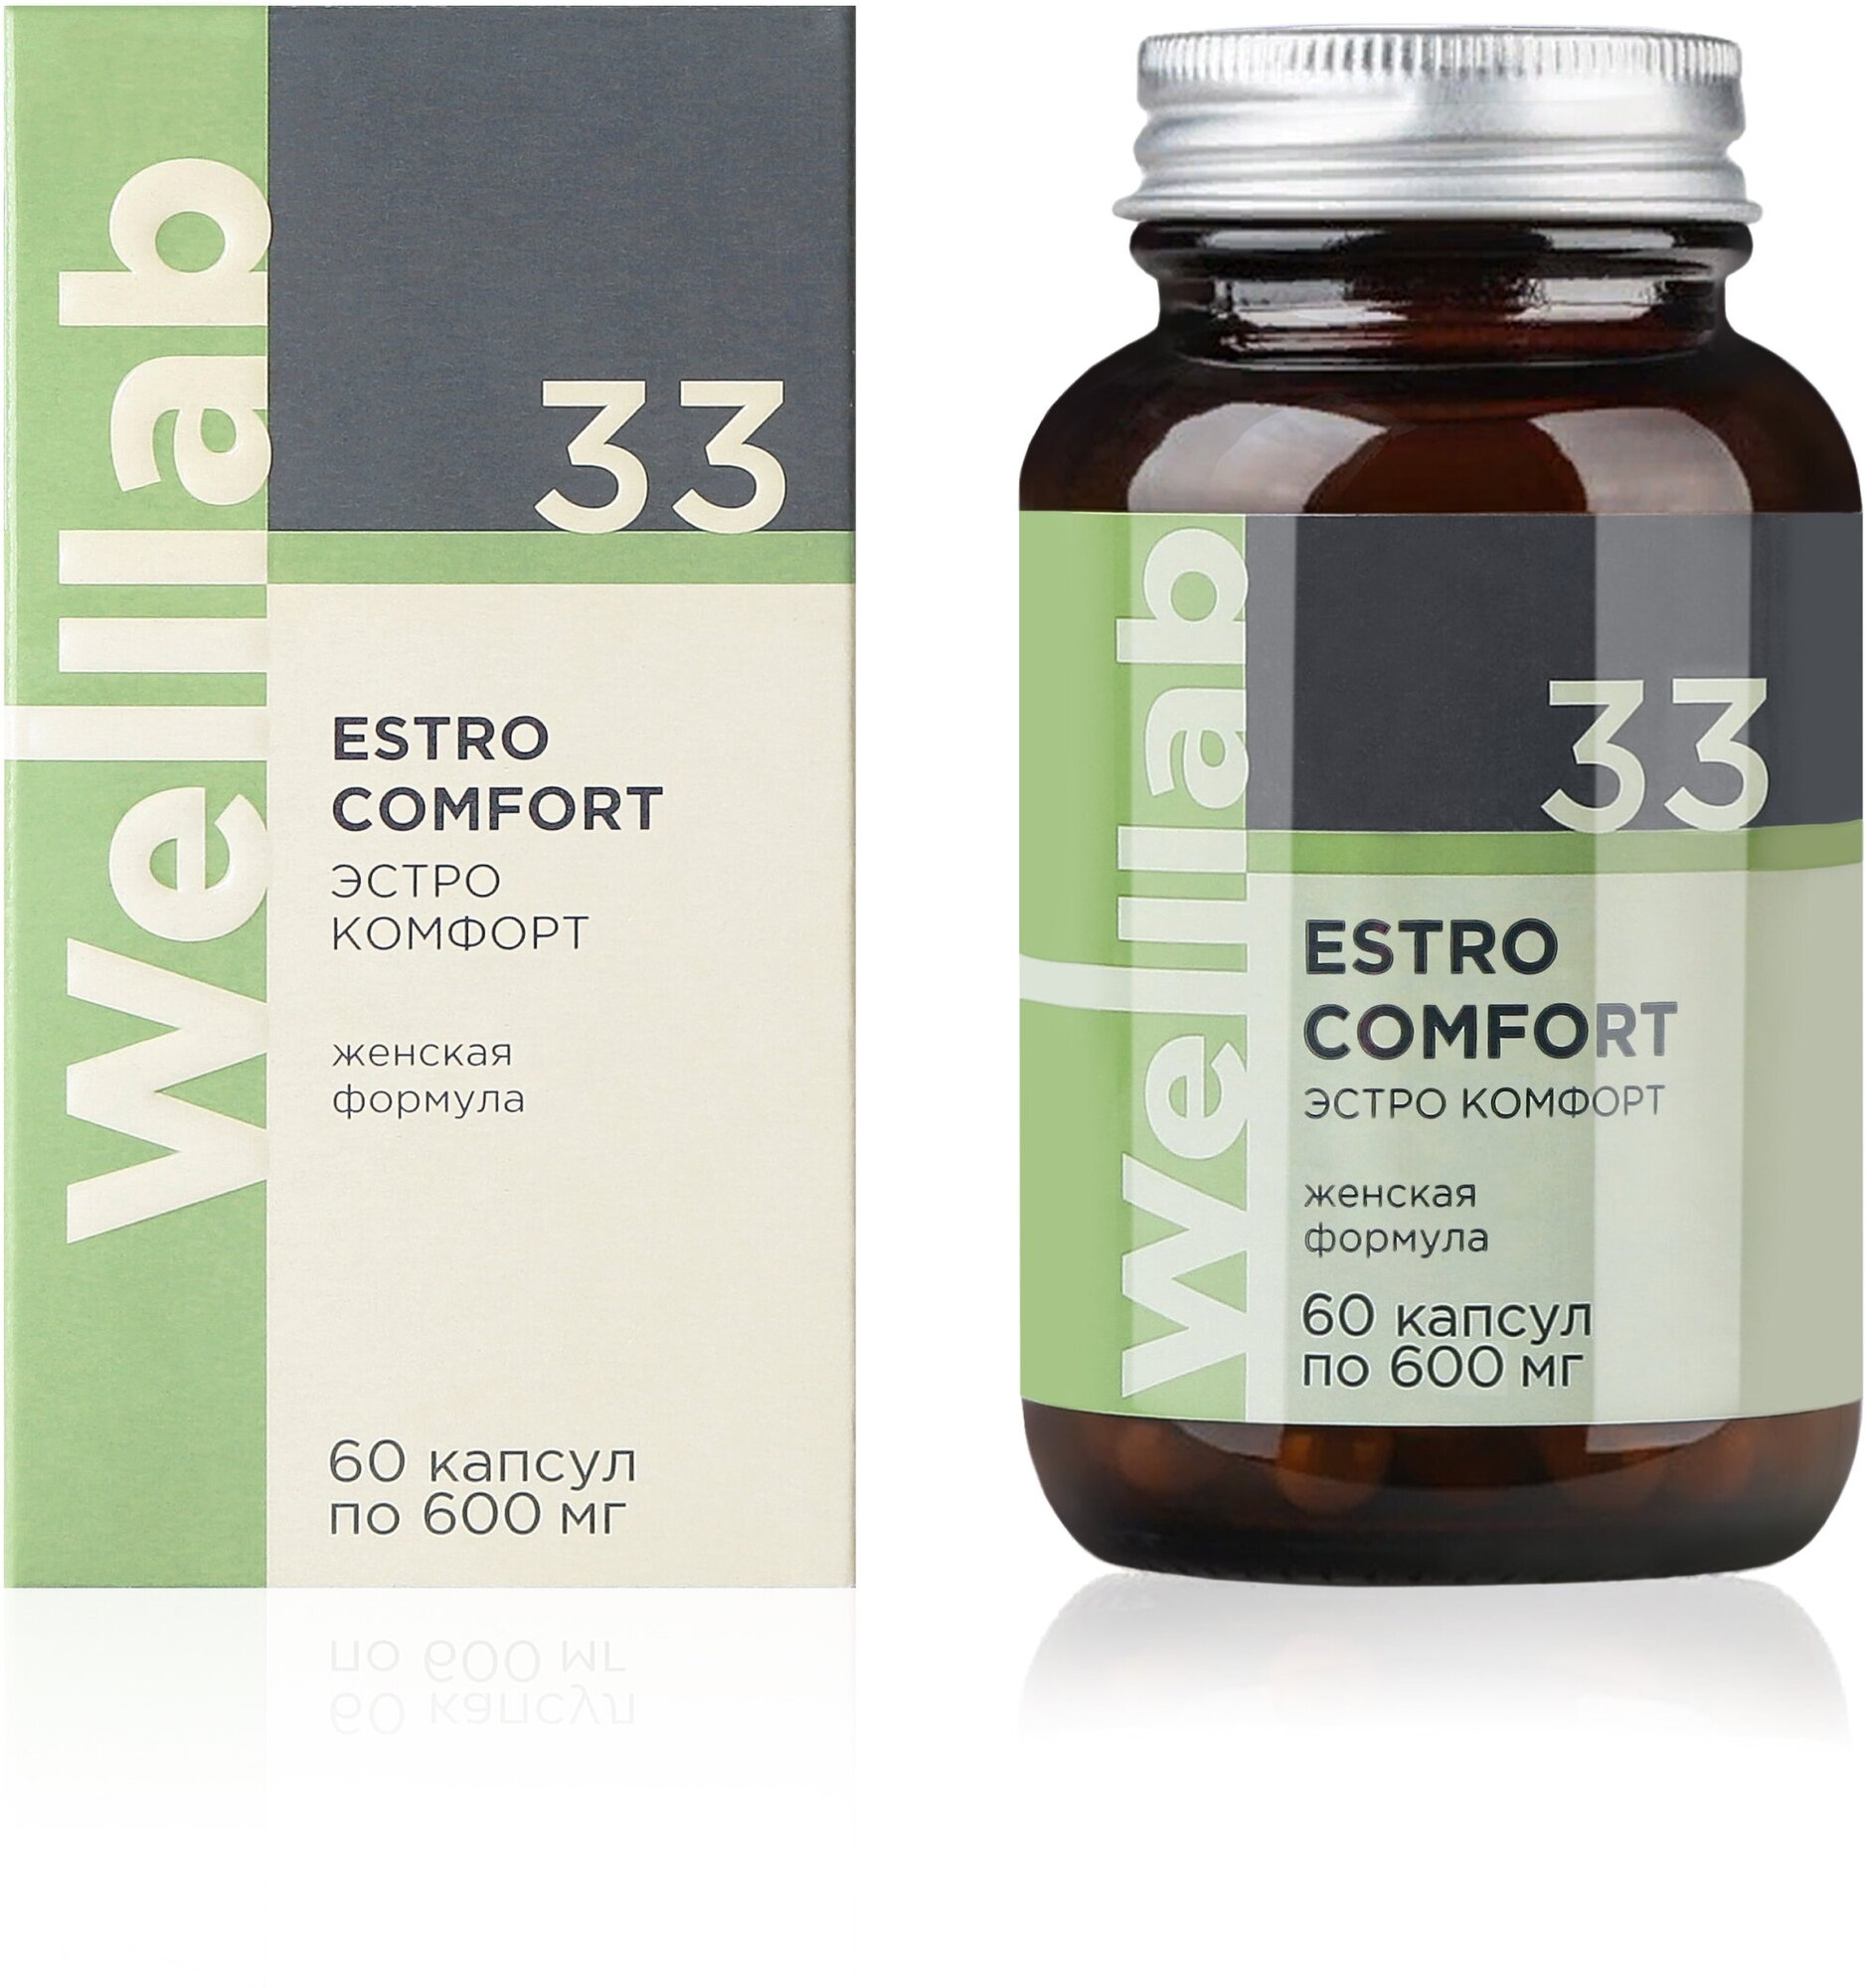 БАД для поддержки женского здоровья Welllab ESTRO COMFORT 60 капсул по 600 мг.